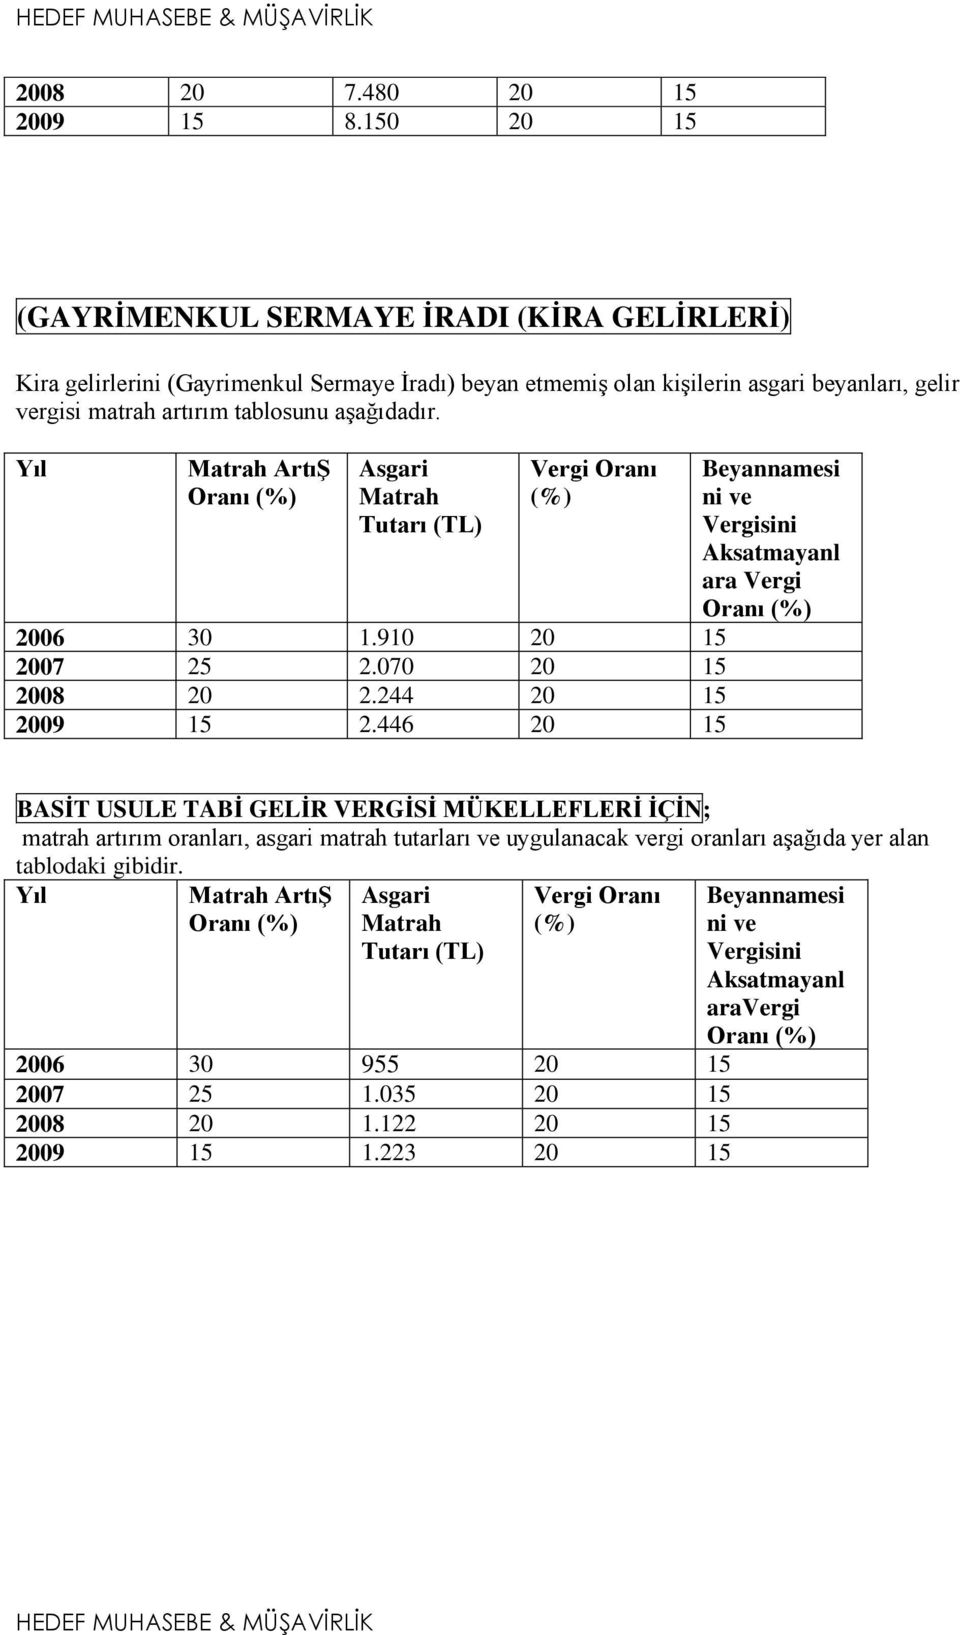 Yıl Matrah Artıġ Oranı (%) Asgari Matrah Tutarı (TL) Vergi Oranı (%) 2006 30 1.910 20 15 2007 25 2.070 20 15 2008 20 2.244 20 15 2009 15 2.